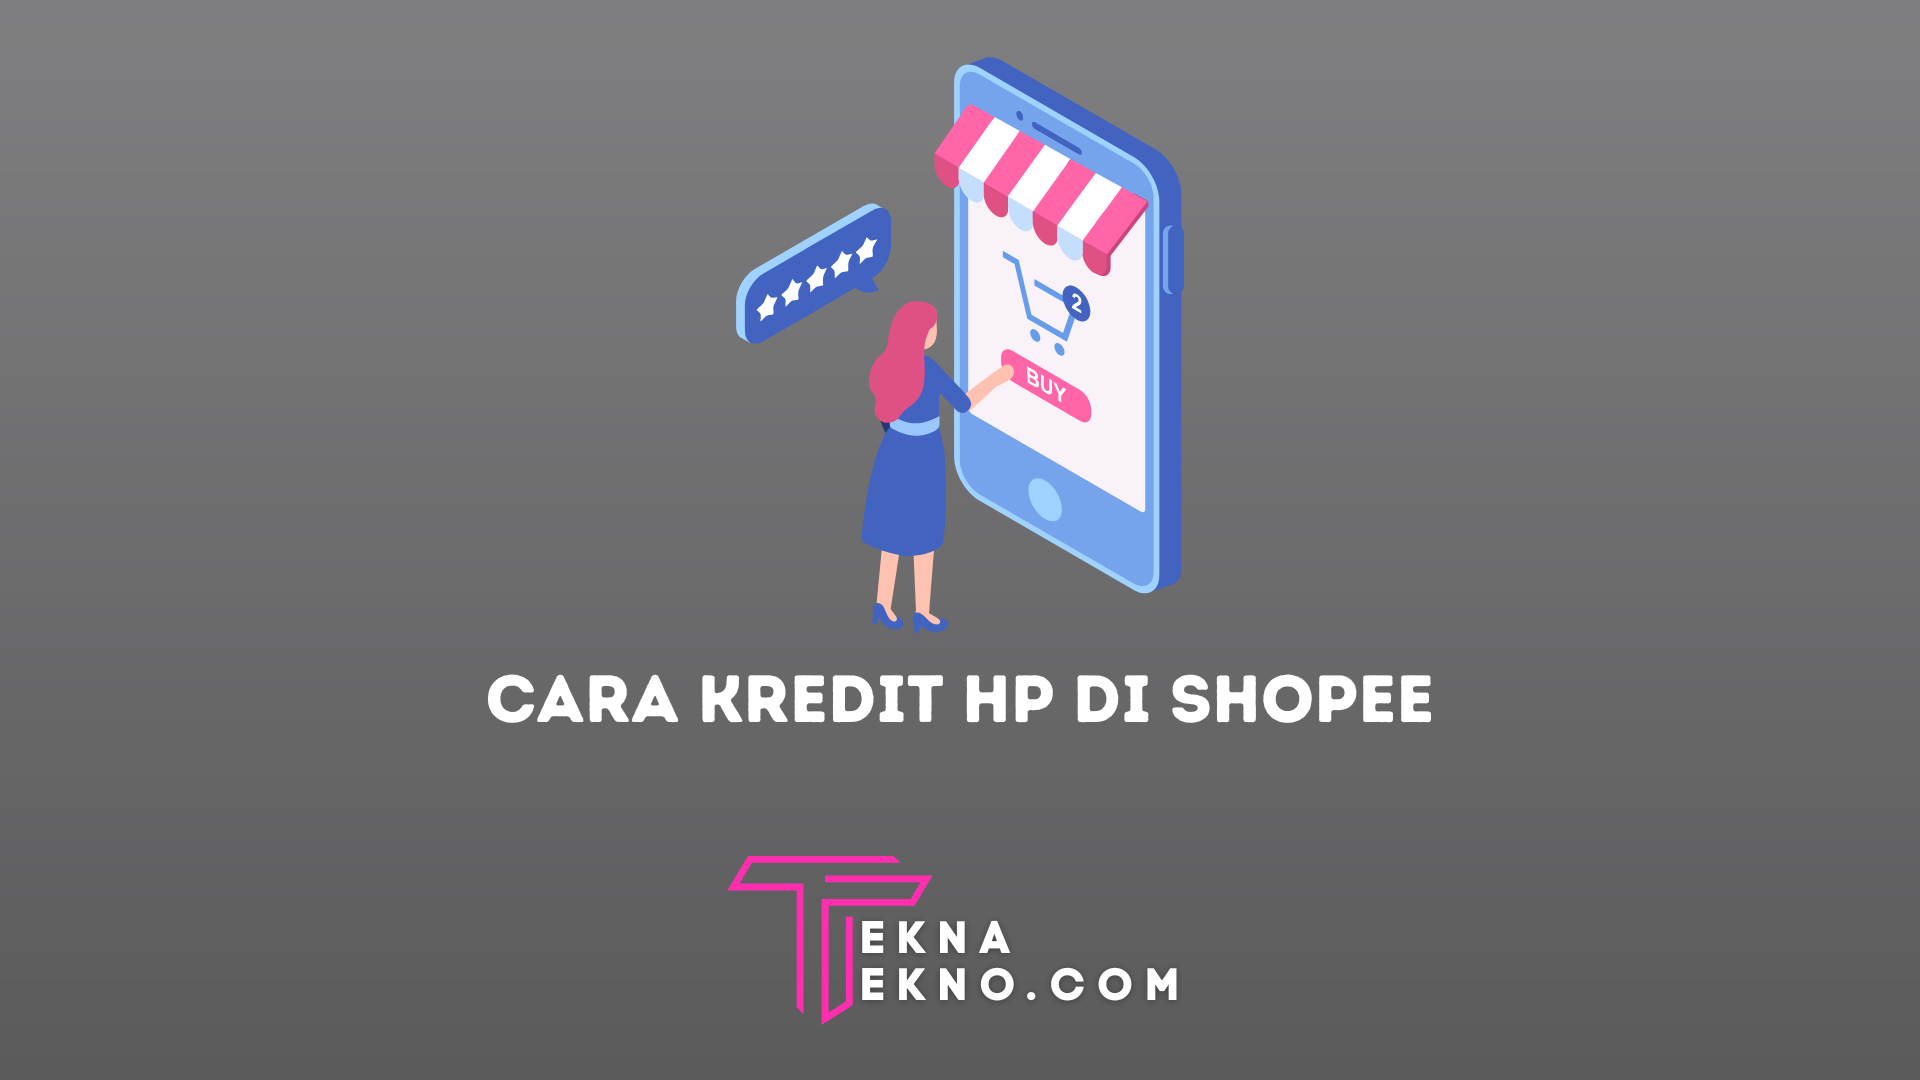 4 Cara Kredit HP di Shopee Tanpa DP dan Kartu Kredit